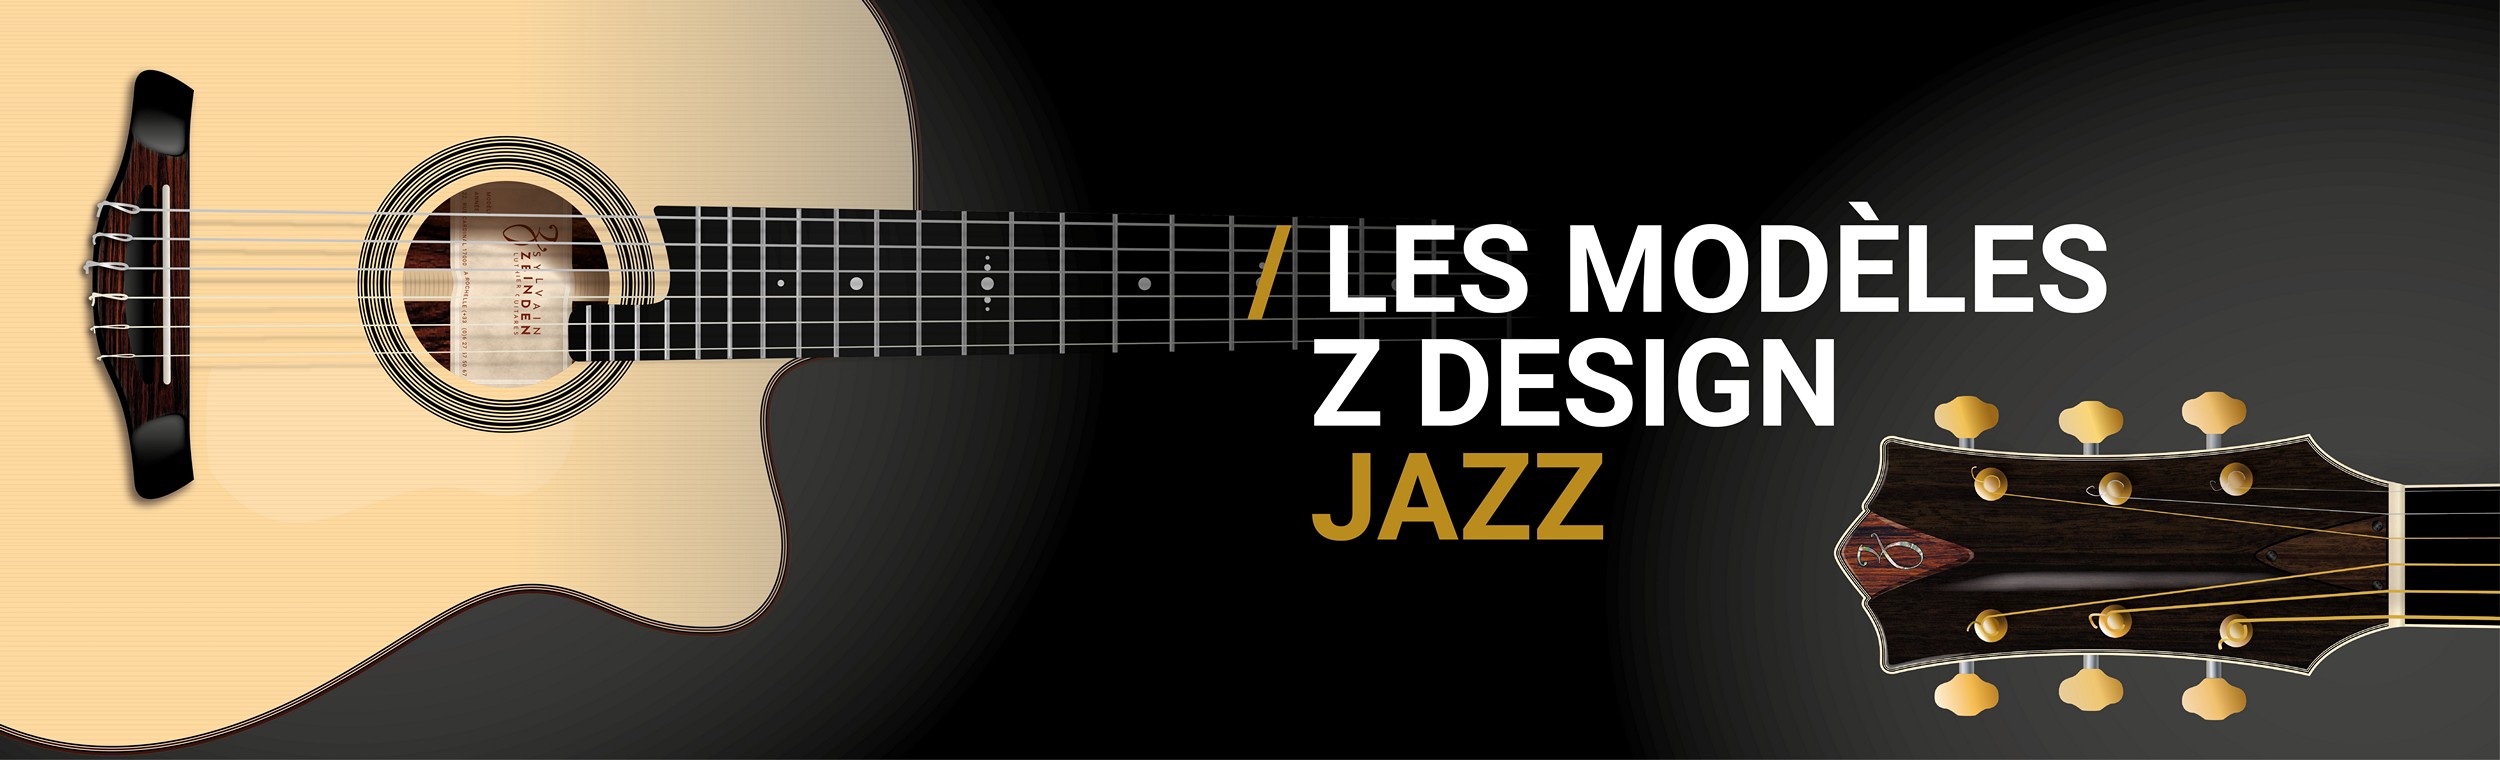 Sylvain Zbinden luthier - les modèles Jazz